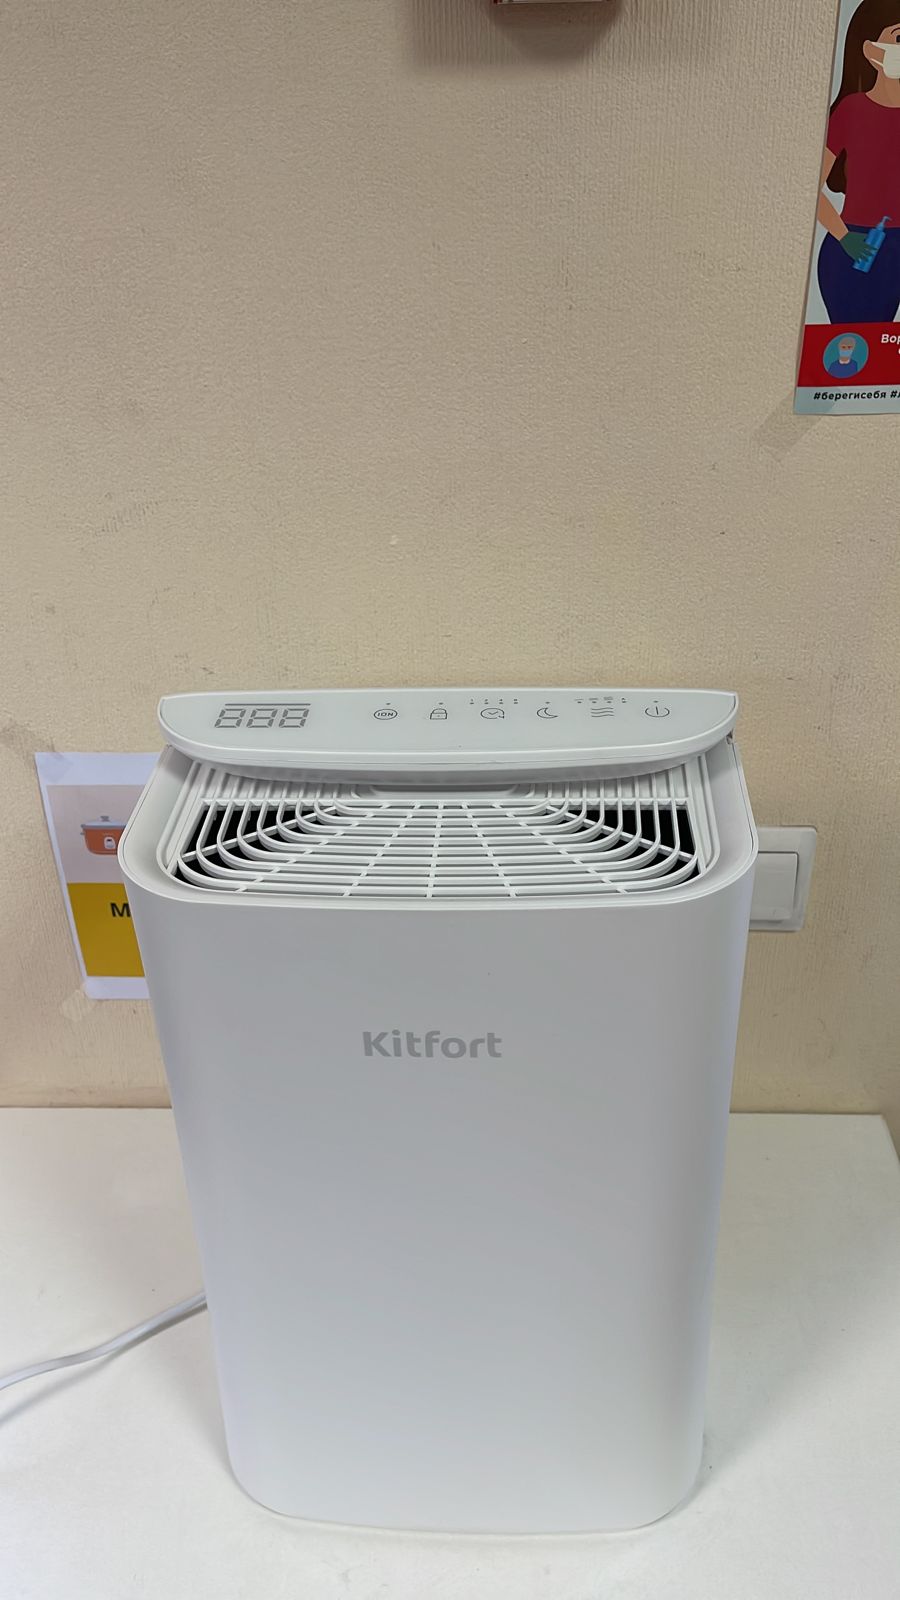   KitFort KT-2825